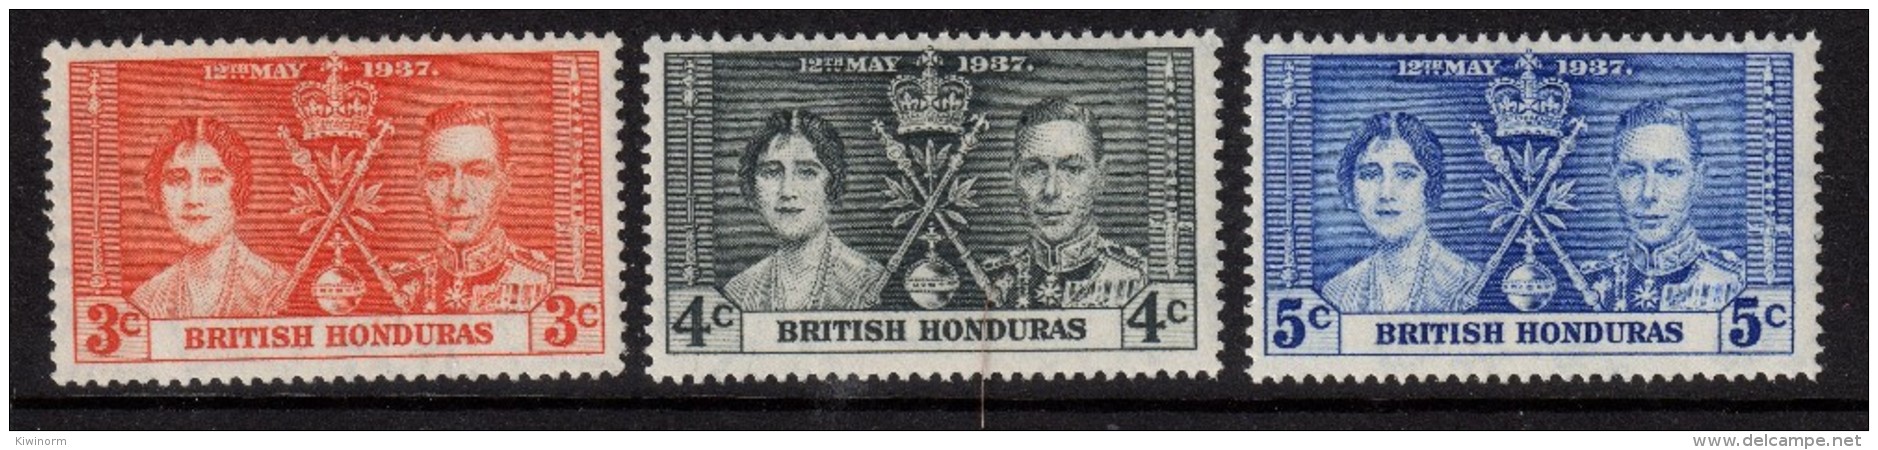 BRITISH HONDURAS 1937 Coronation Omnibus Set - Mint Hinged - MH * - 5B788 - British Honduras (...-1970)